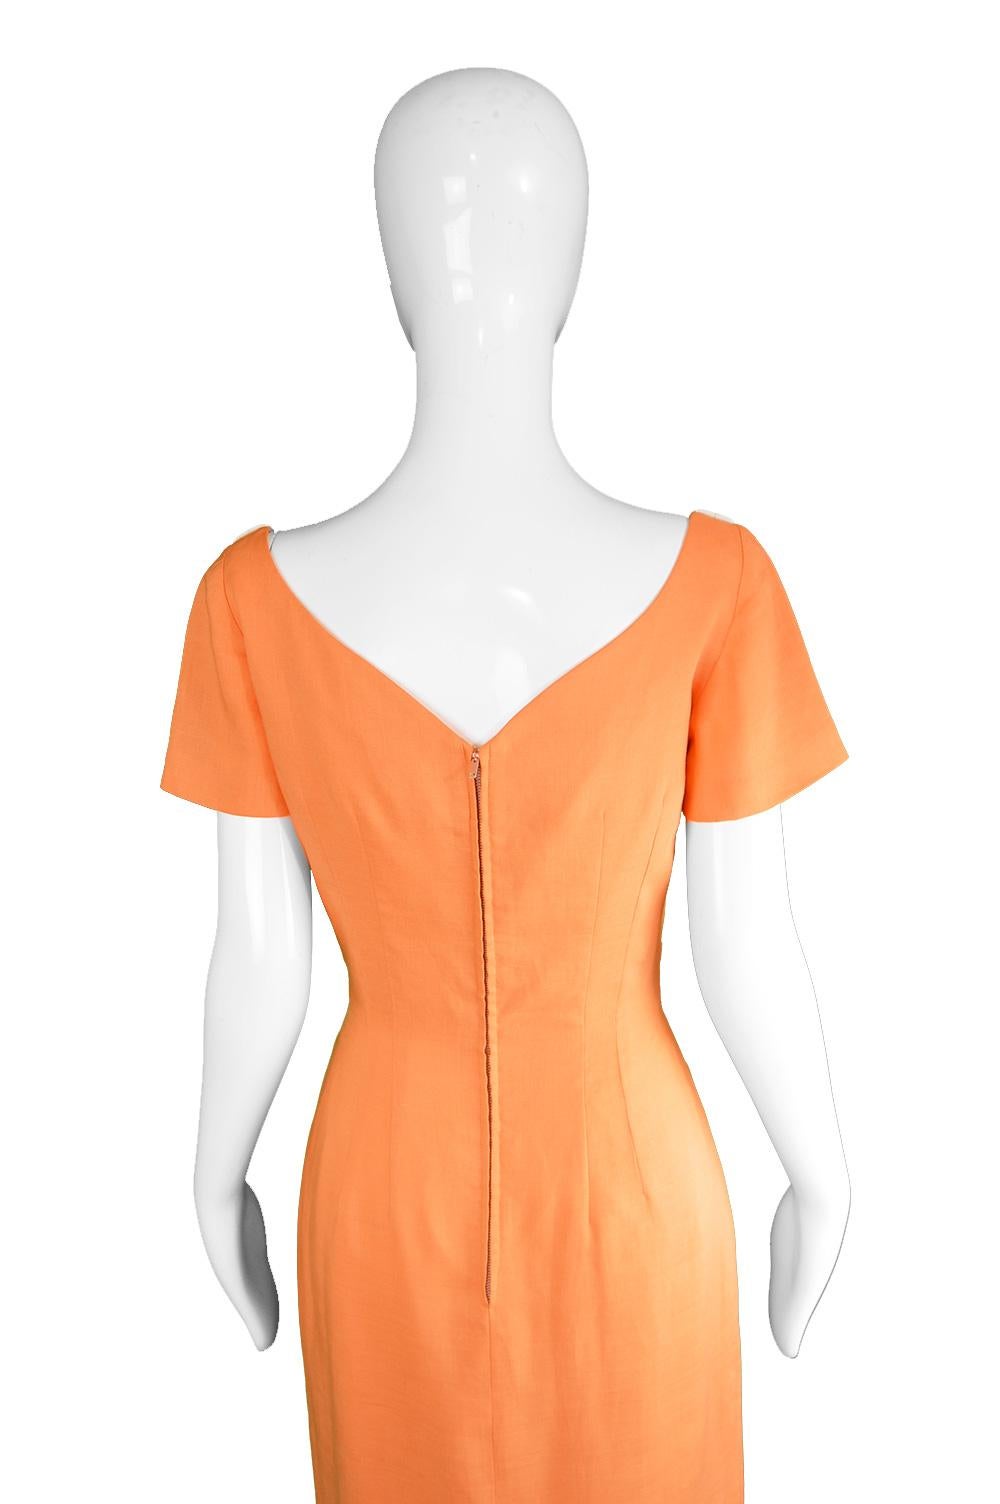 Oleg Cassini Vintage Orange, White & Yellow Linen Short Sleeve Mod Dress, 1960s For Sale 4